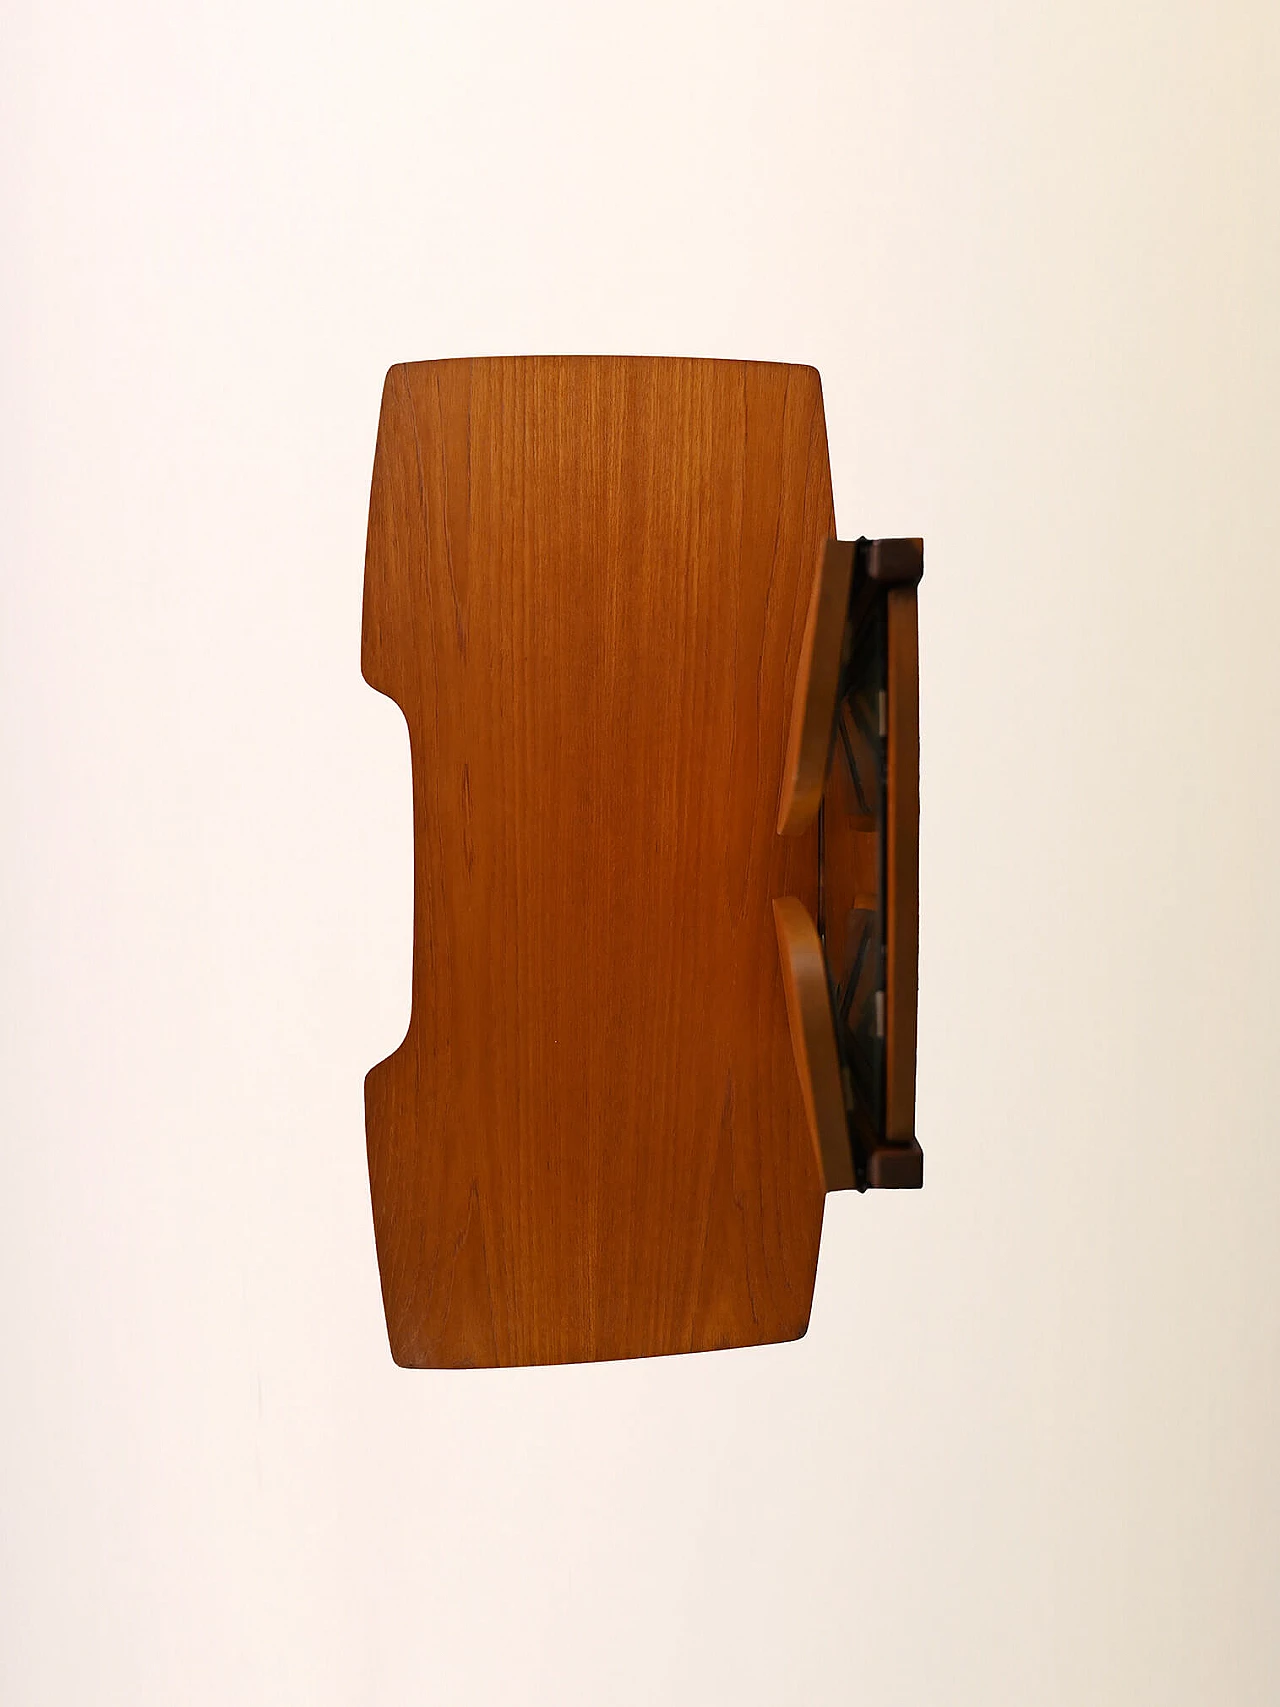 Toeletta scandinava in legno con specchio pieghevole, anni '60 16